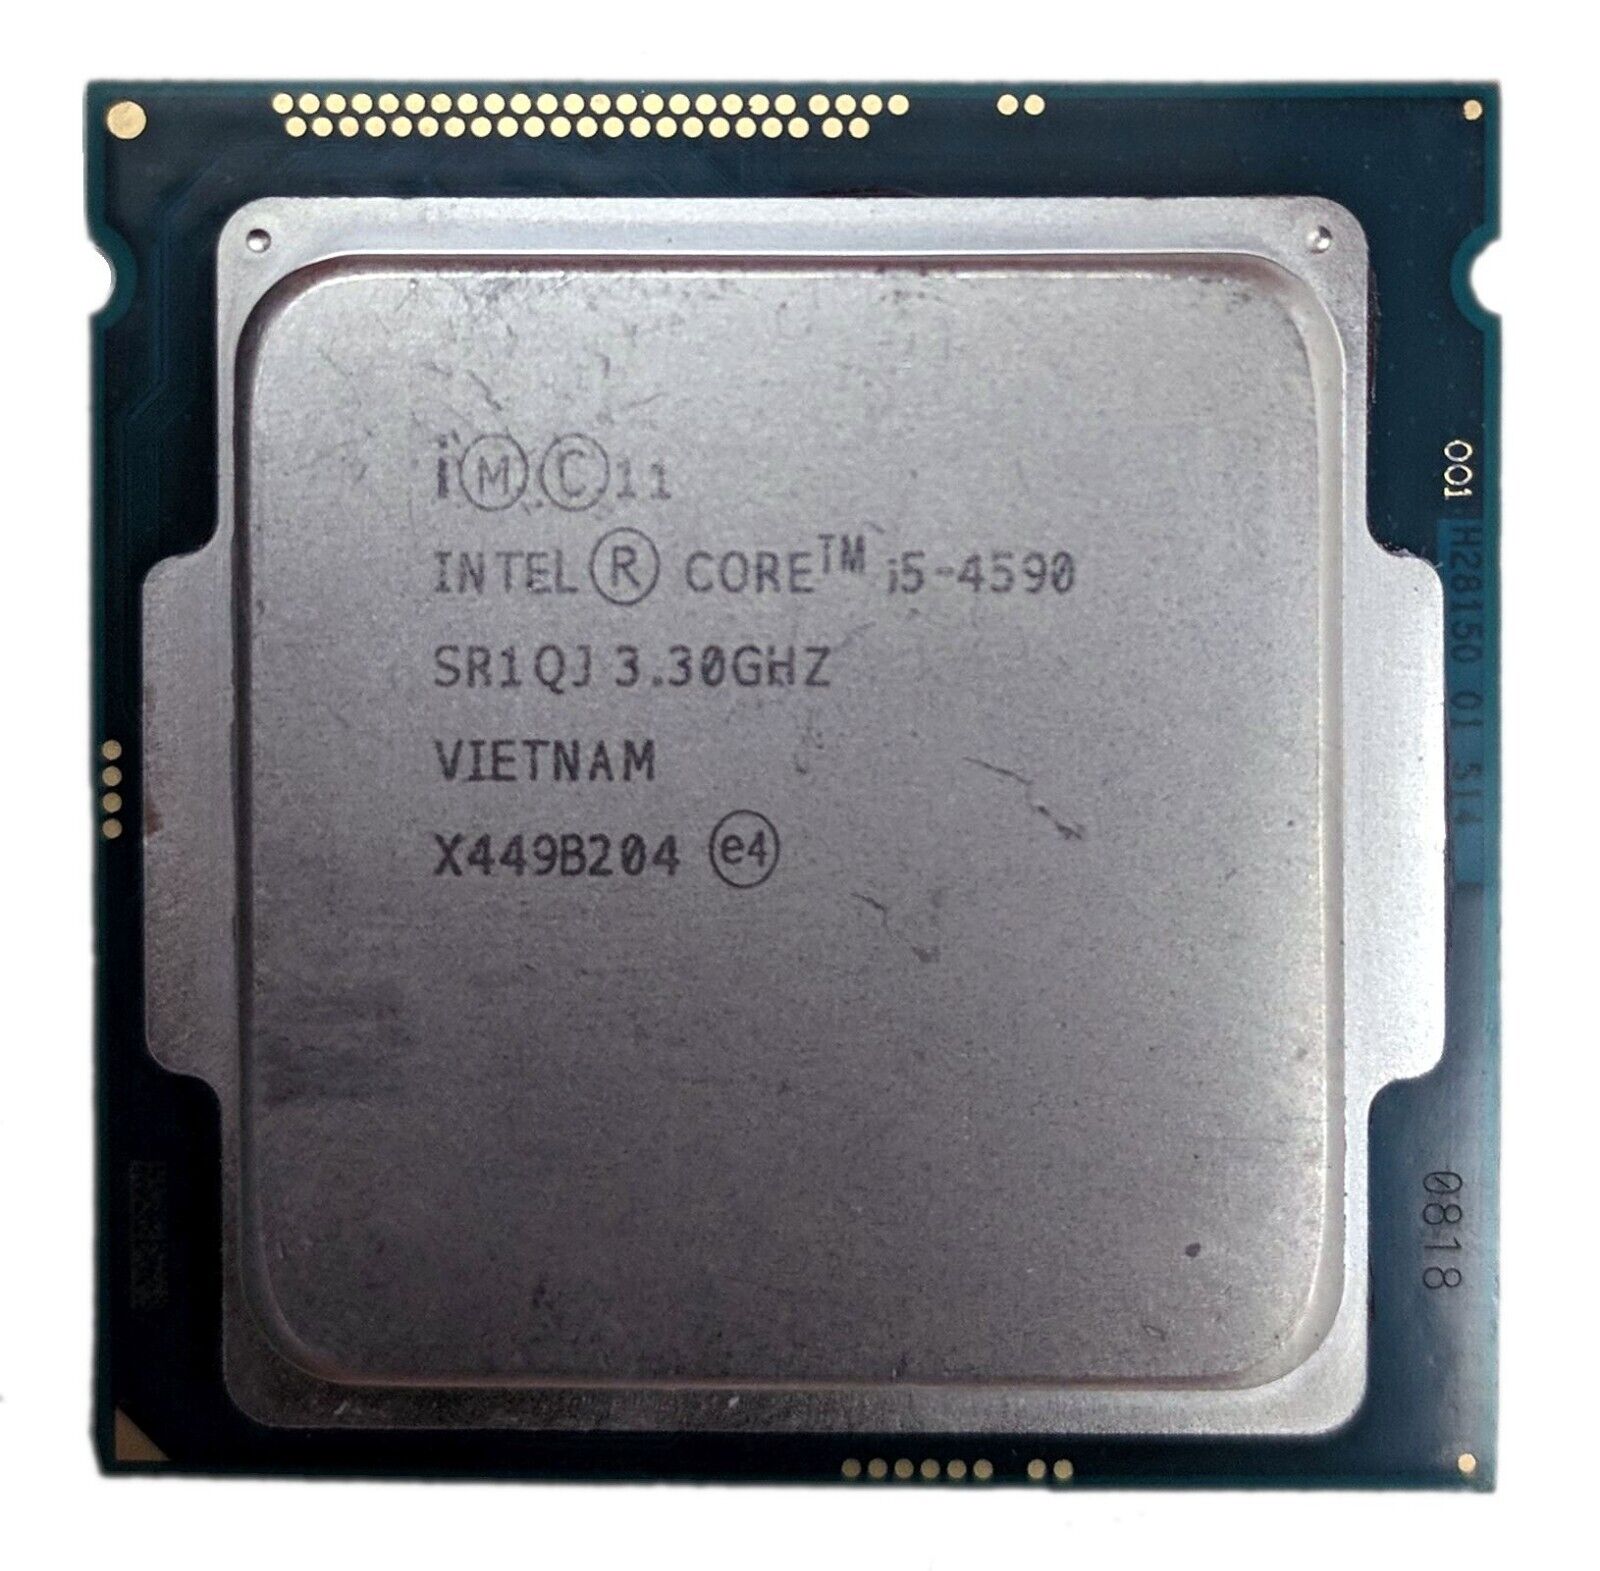 Lot of 12 Intel Core i5-4590 3.30GHz Quad-Core 6MB LGA 1150 CPU Processor SR1QJ